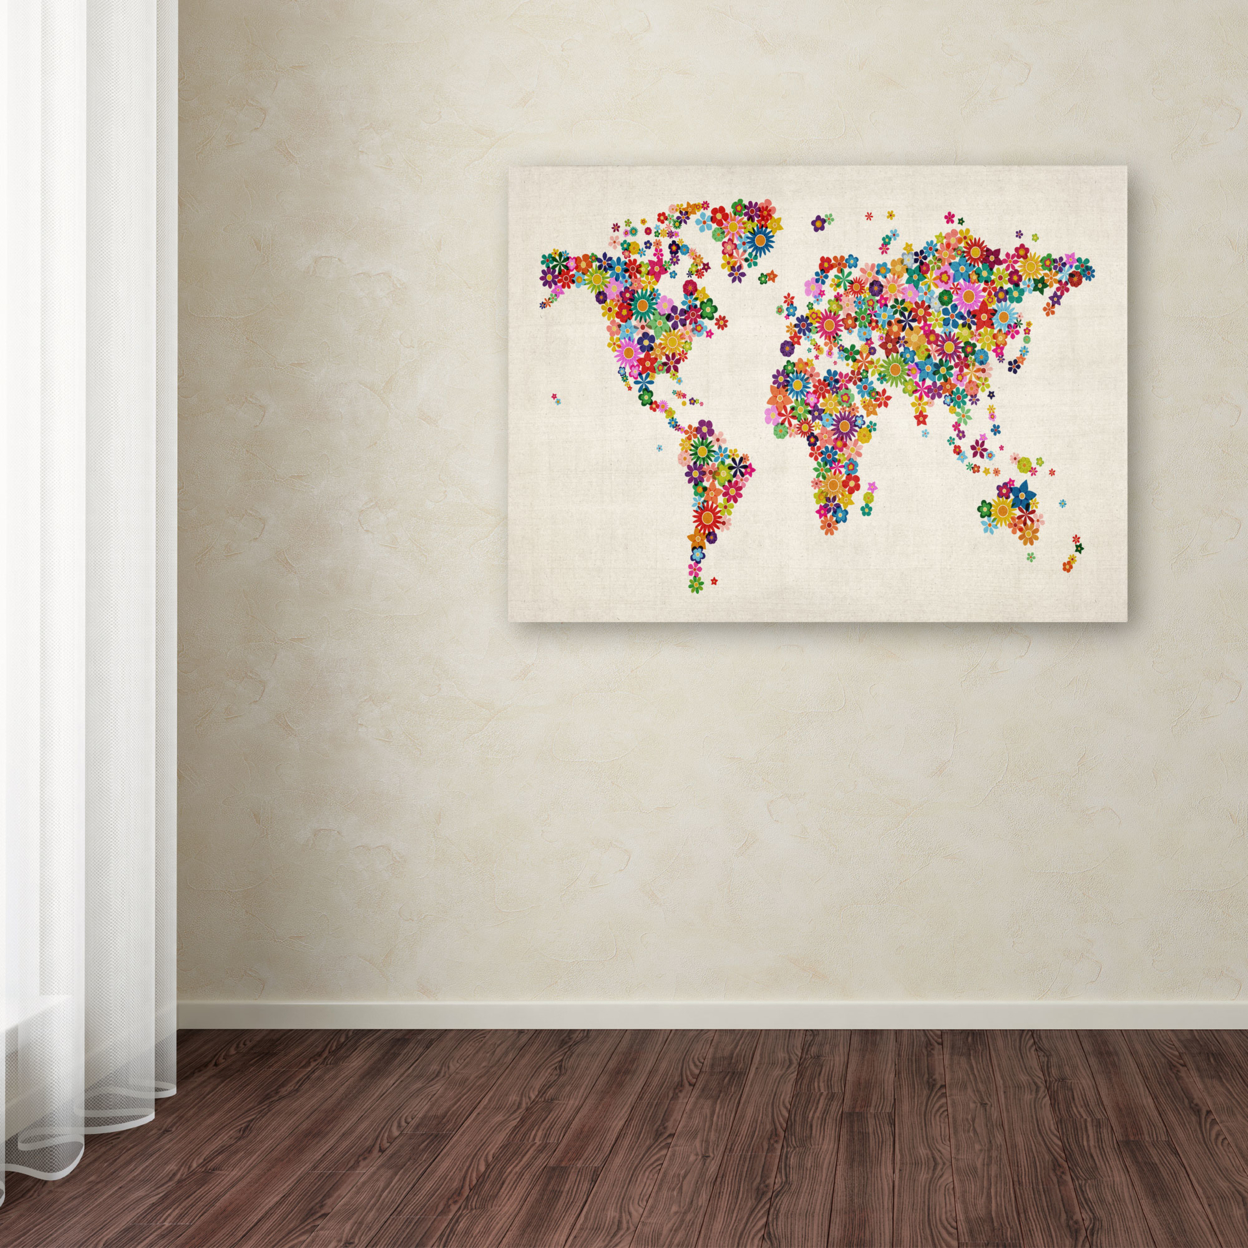 Michael Tompsett 'Flowers World Map' Canvas Art 16 X 24